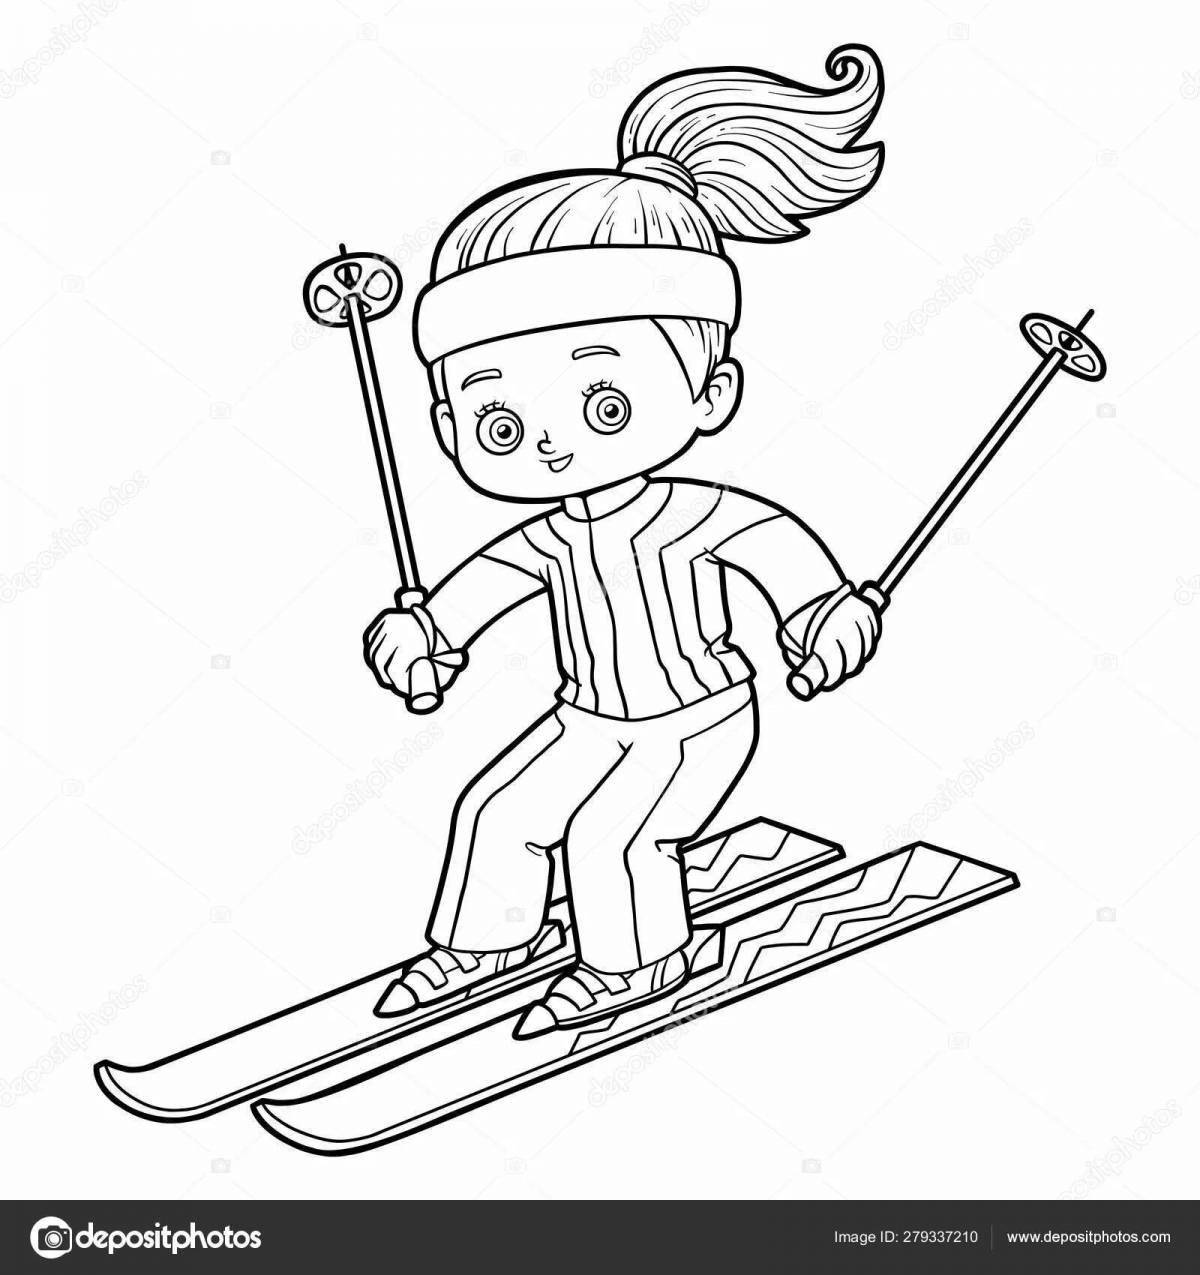 Toddler skis #5